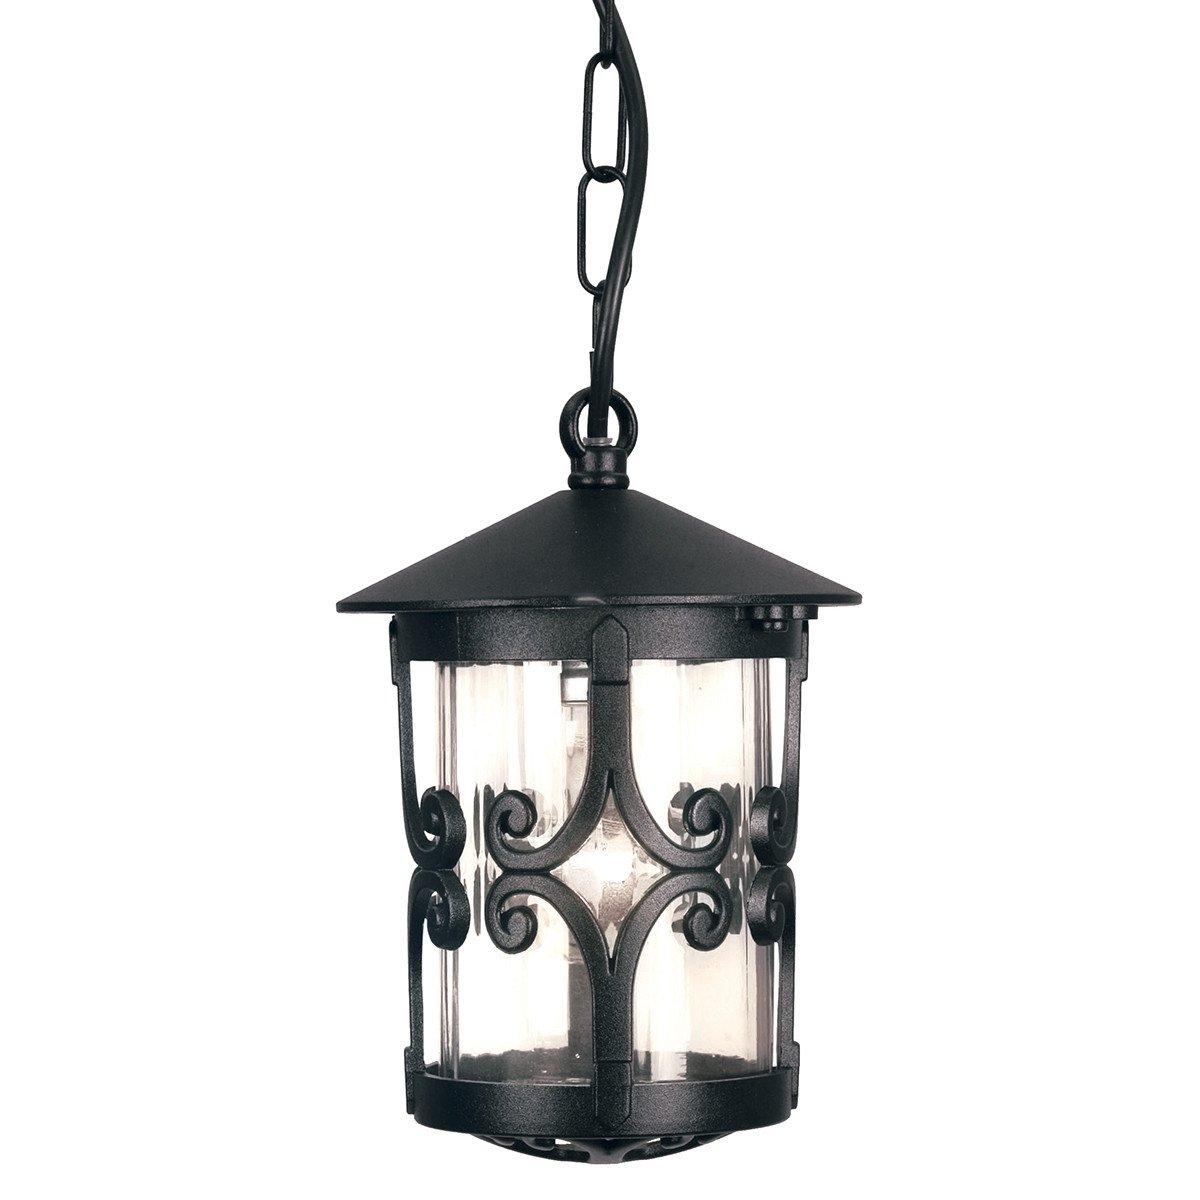 Hereford 1 Light Outdoor Ceiling Lantern Black E27